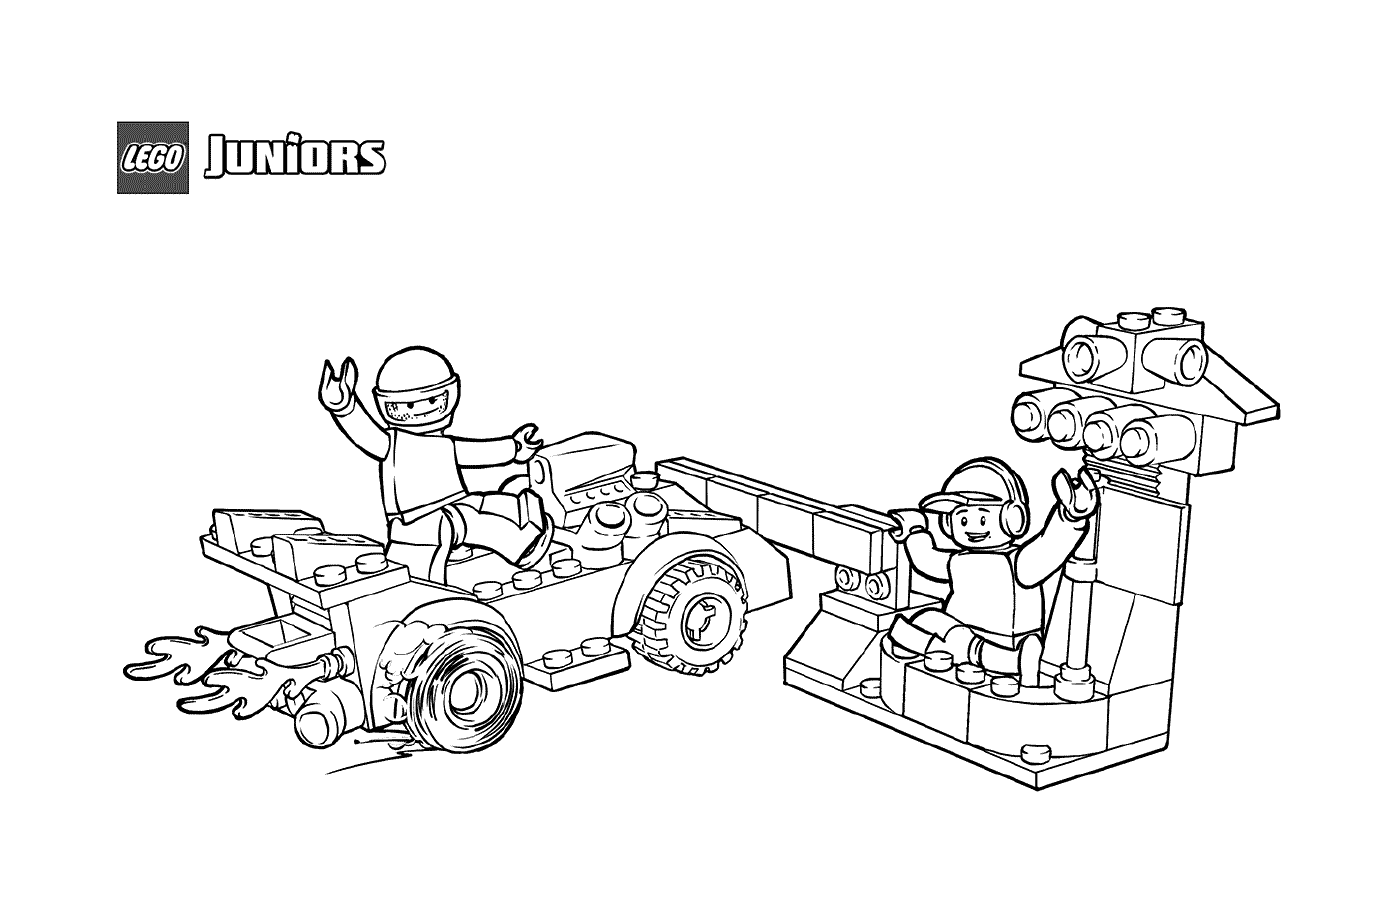  Parada en el stand de LEGO para coches de carreras 